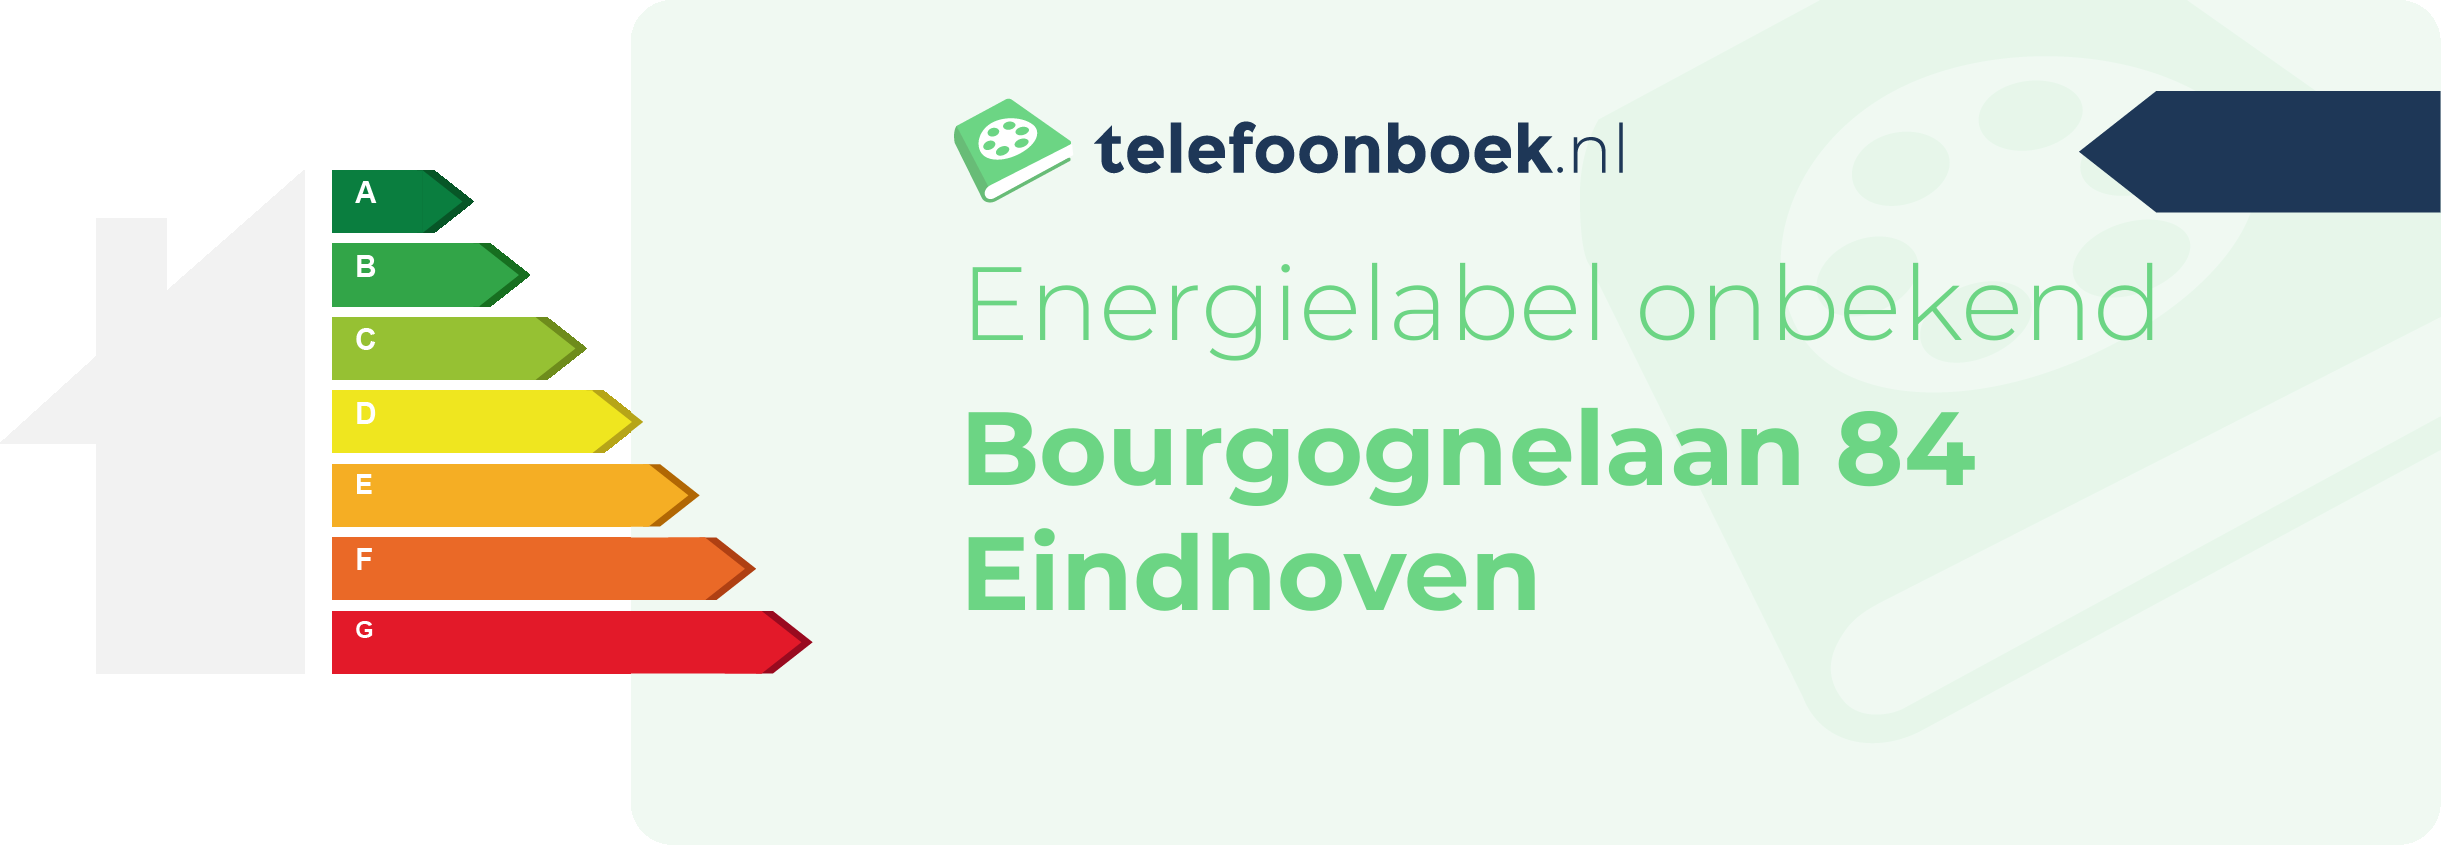 Energielabel Bourgognelaan 84 Eindhoven